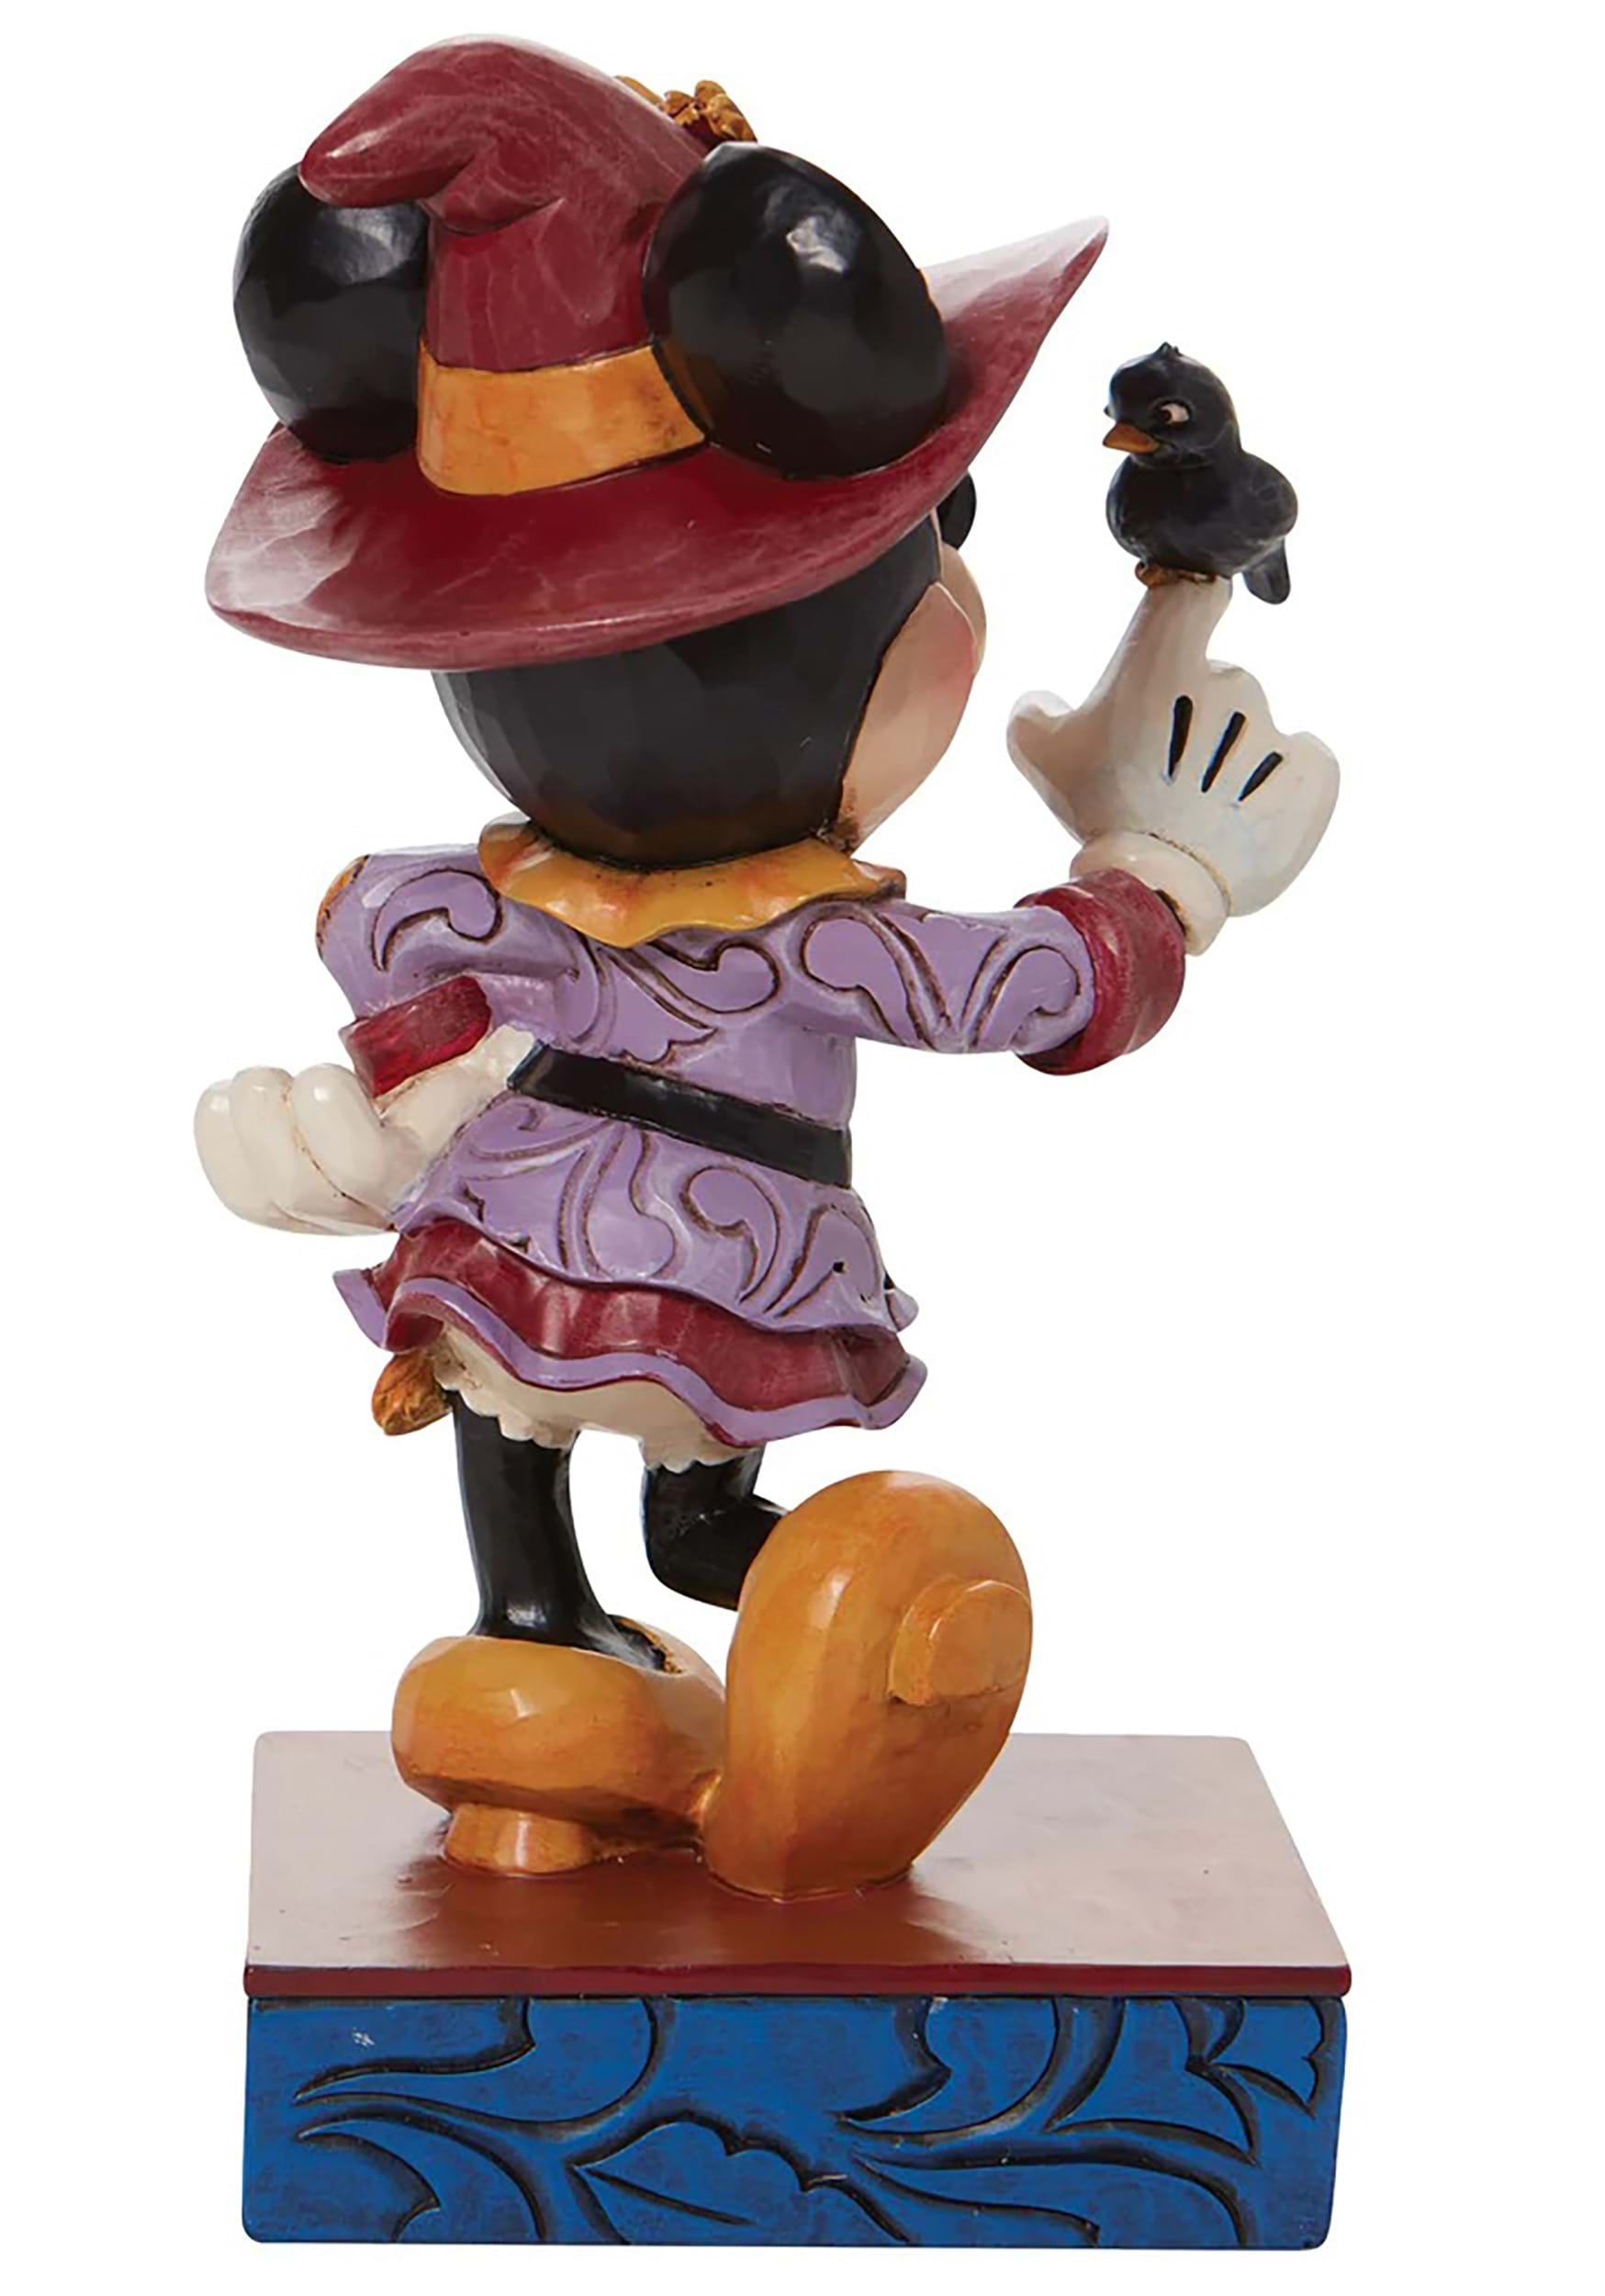 Figurine Minnie Scarecrow by Jim Shore